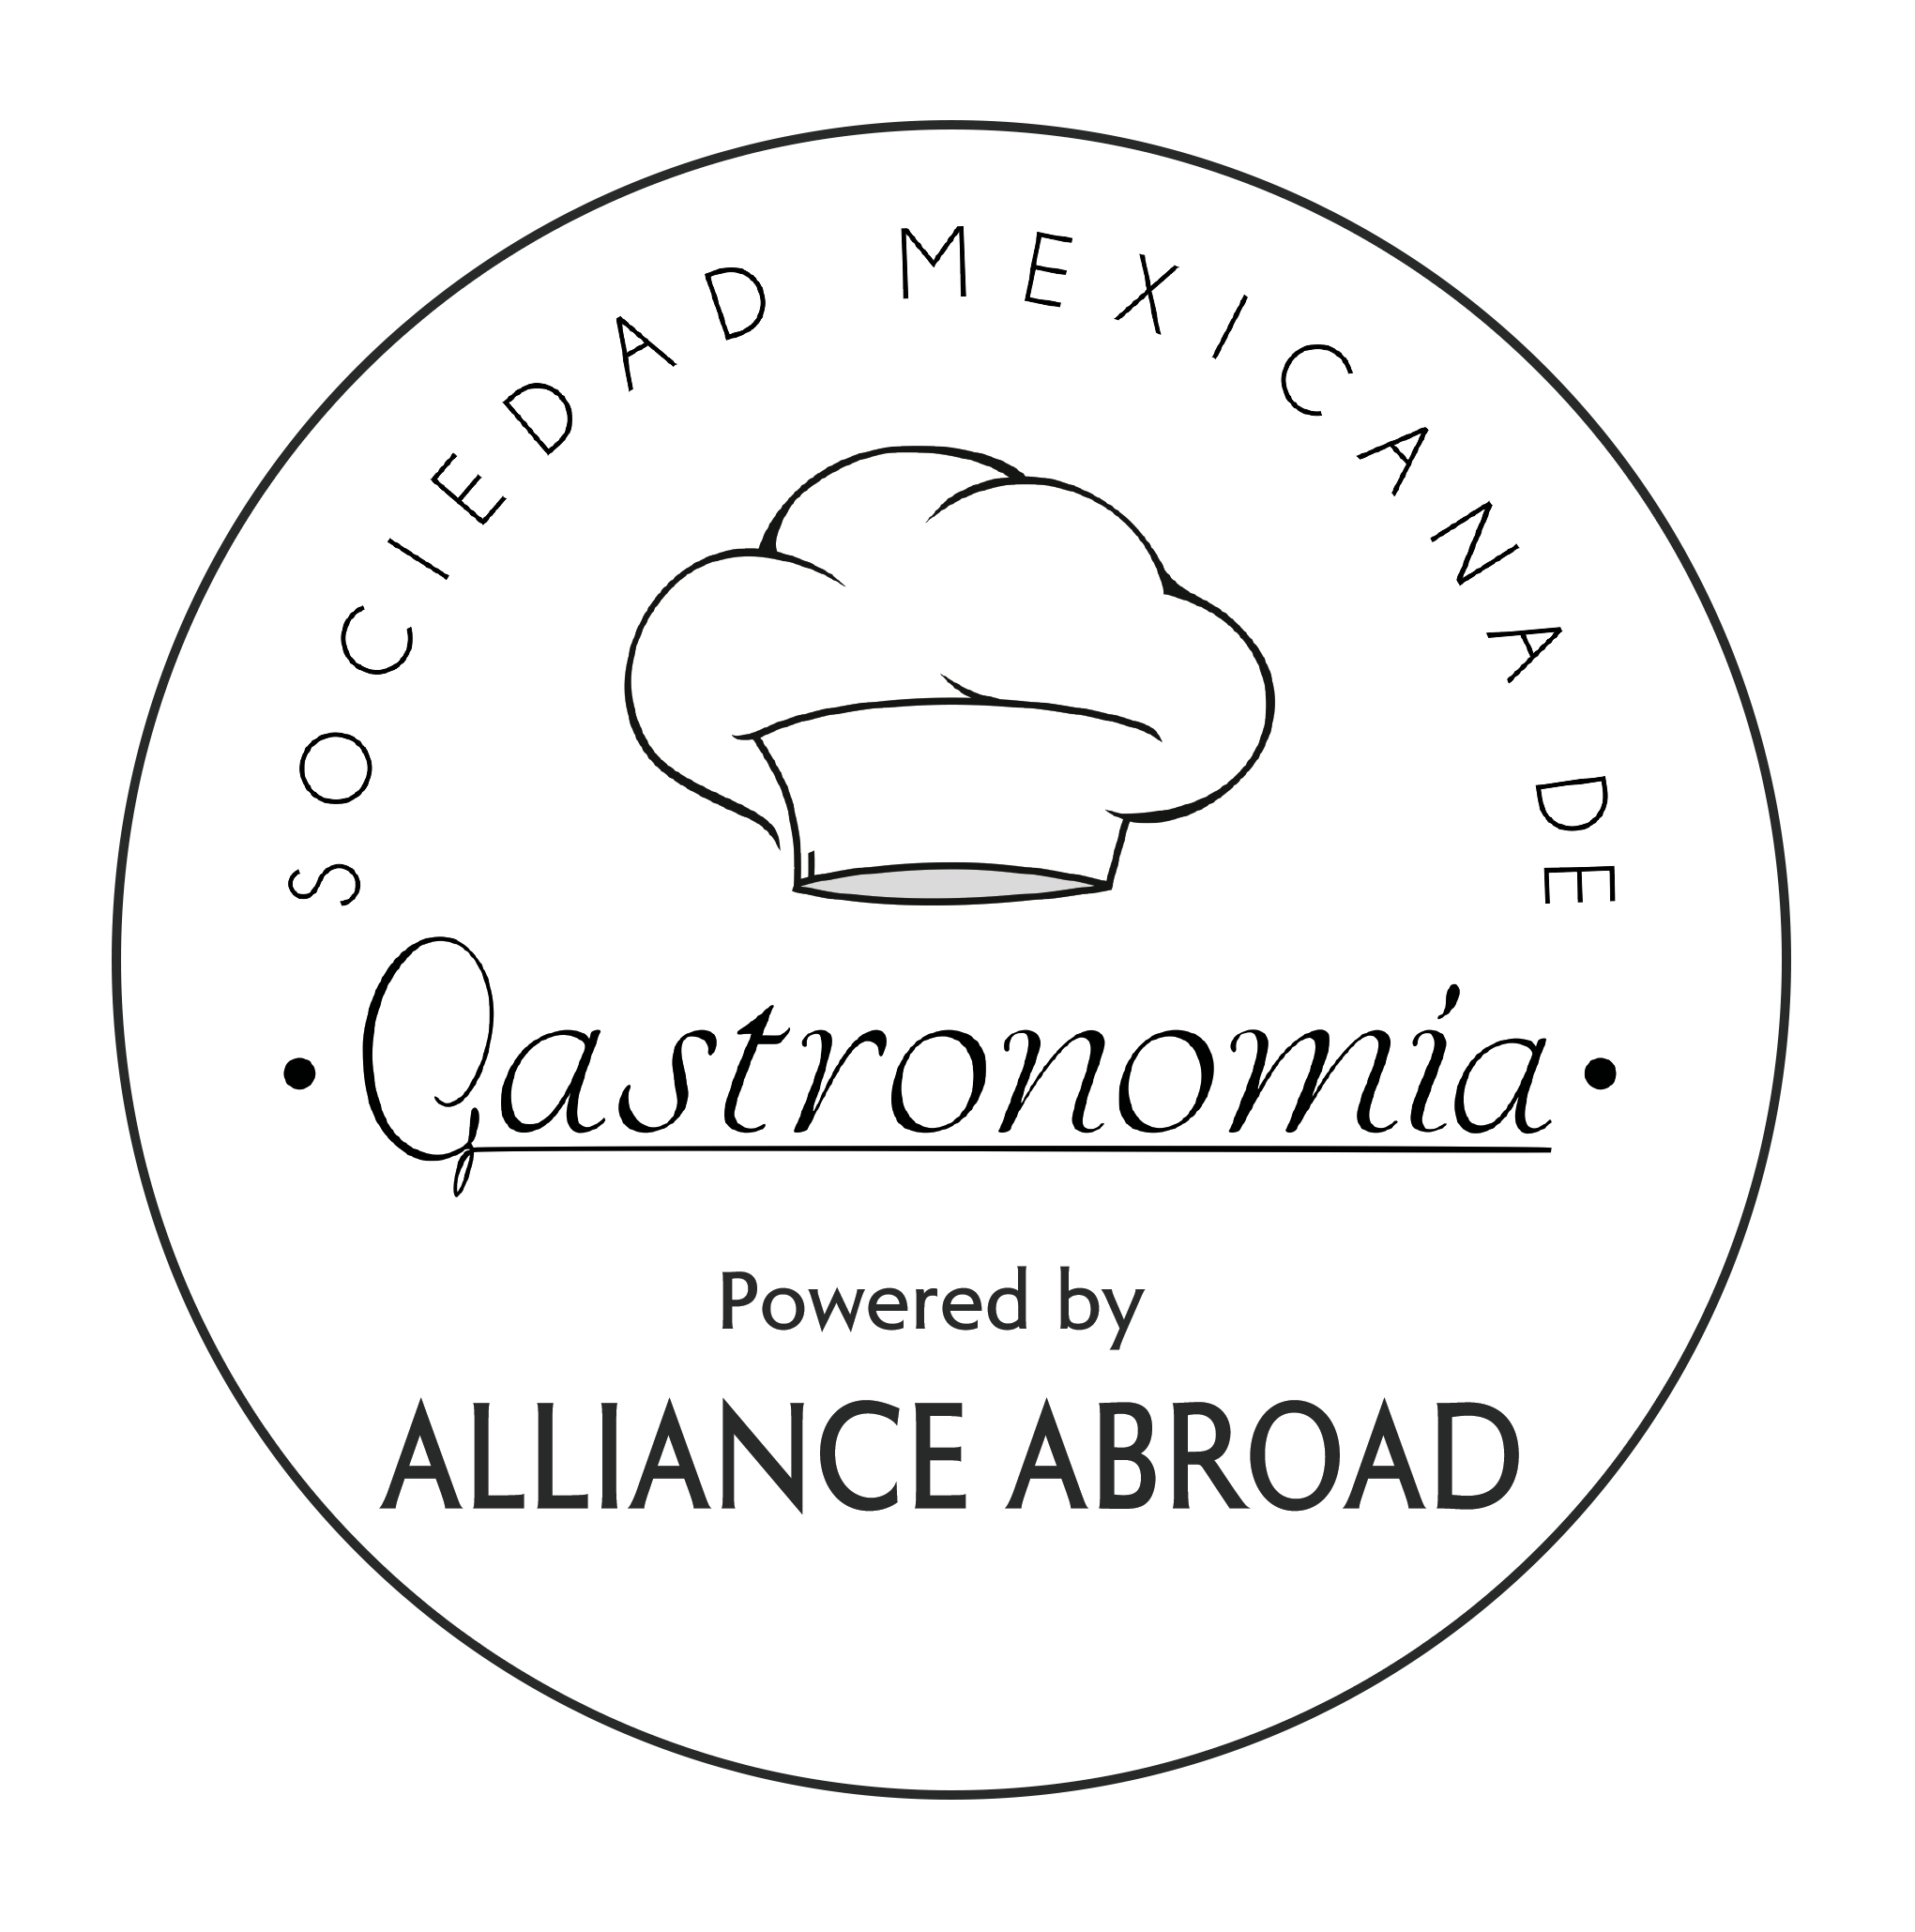 Sociedad Mexicana de Gastronomía, Prácticas profesionales